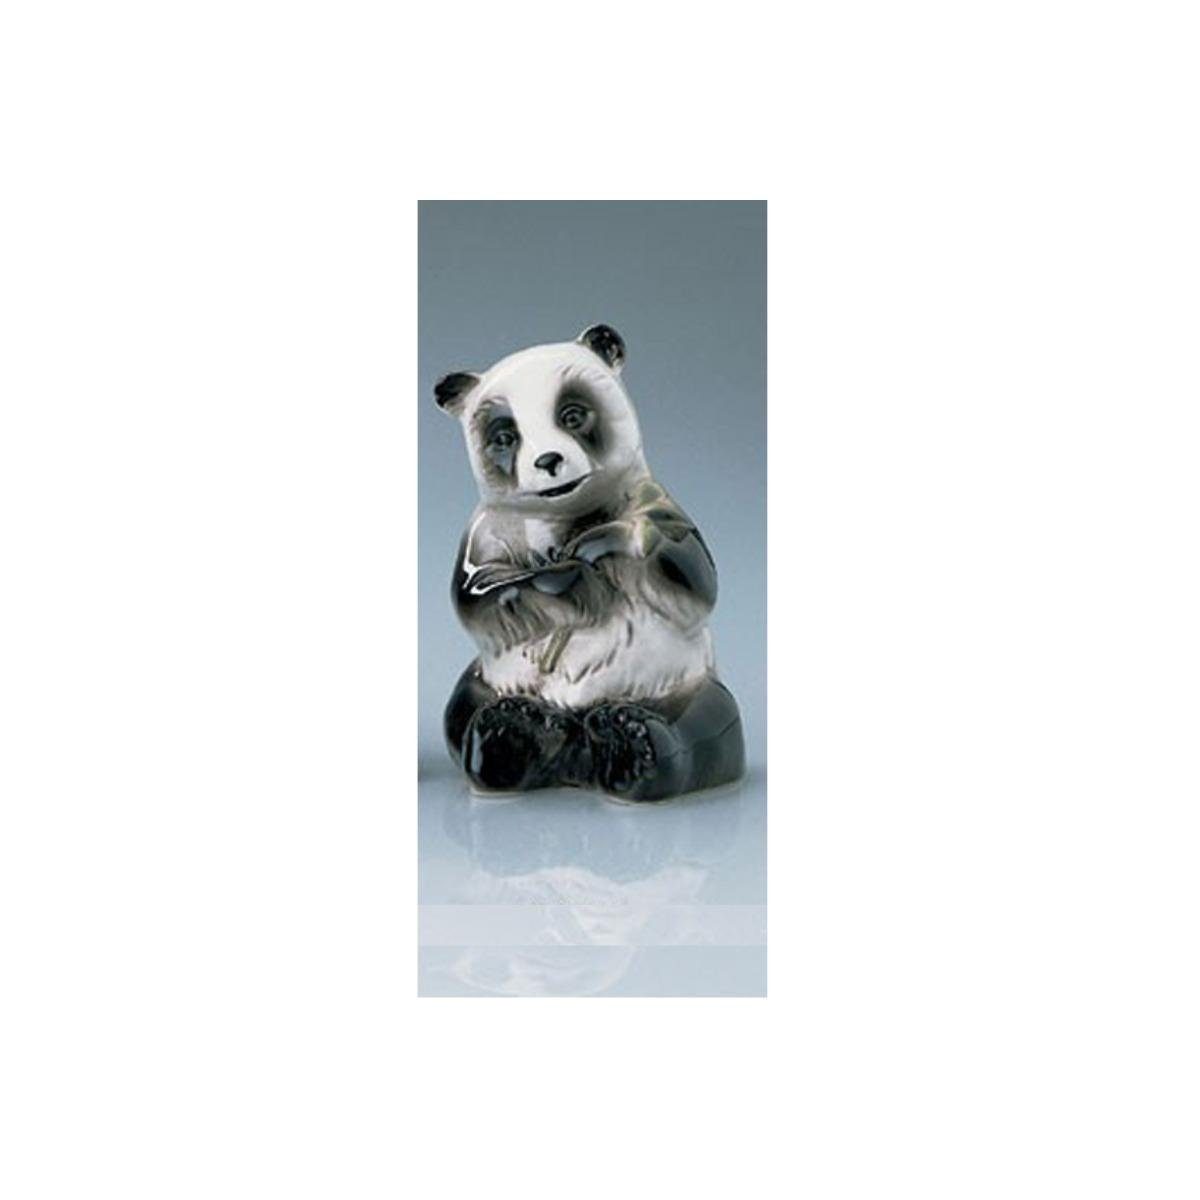 Wagner & Apel Porzellan Dekofigur 02599/40 - Pandabär, aufrecht sitzend